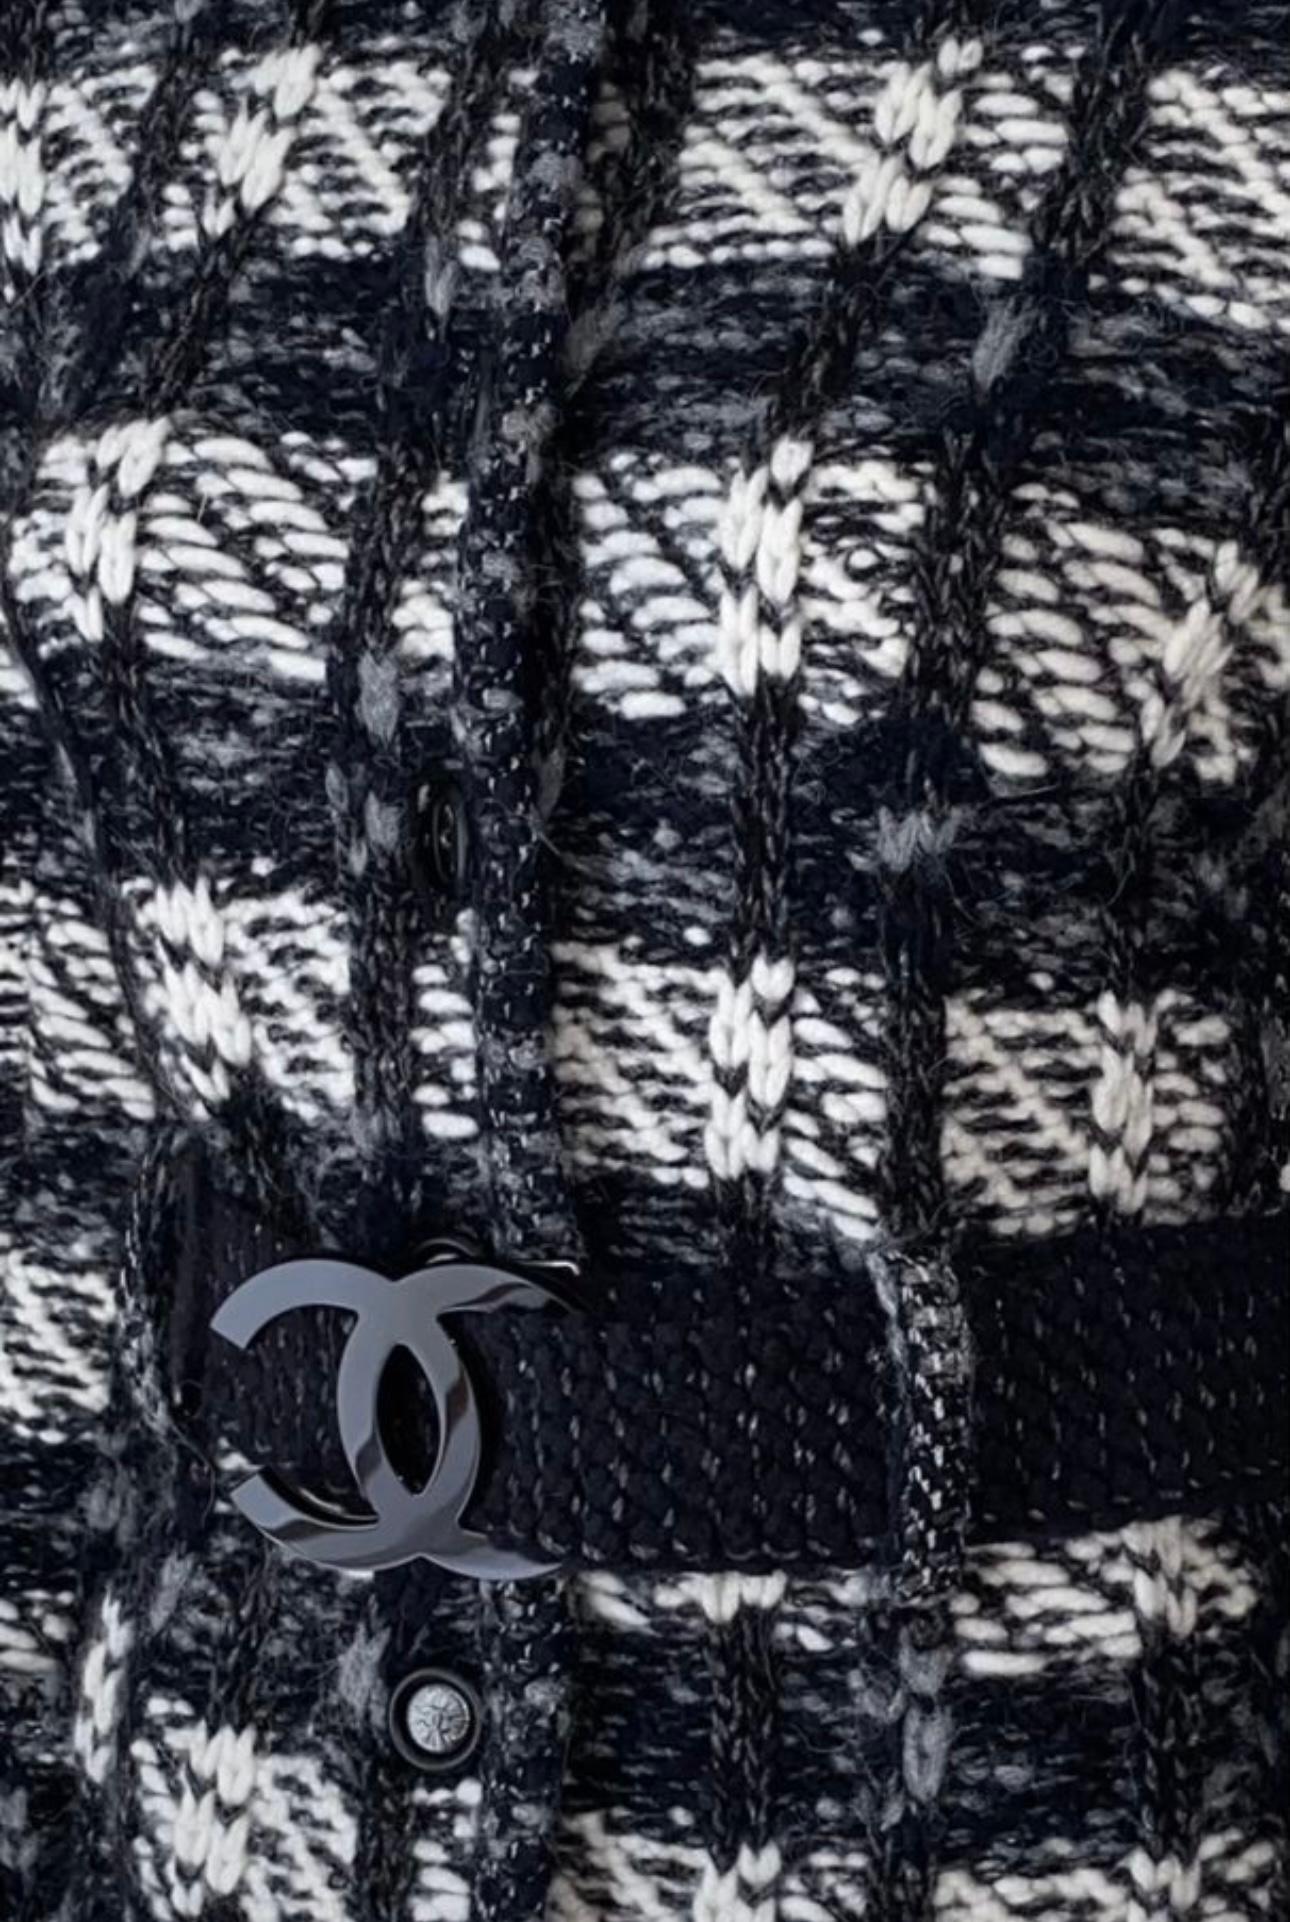 Schwarze Chanel Jacke mit CC Logo Schnallengürtel.
CC-Logo-Knöpfe auf der Vorderseite
Größenbezeichnung 38 FR. Ungetragener Zustand, Zustand einer neuen Sache.